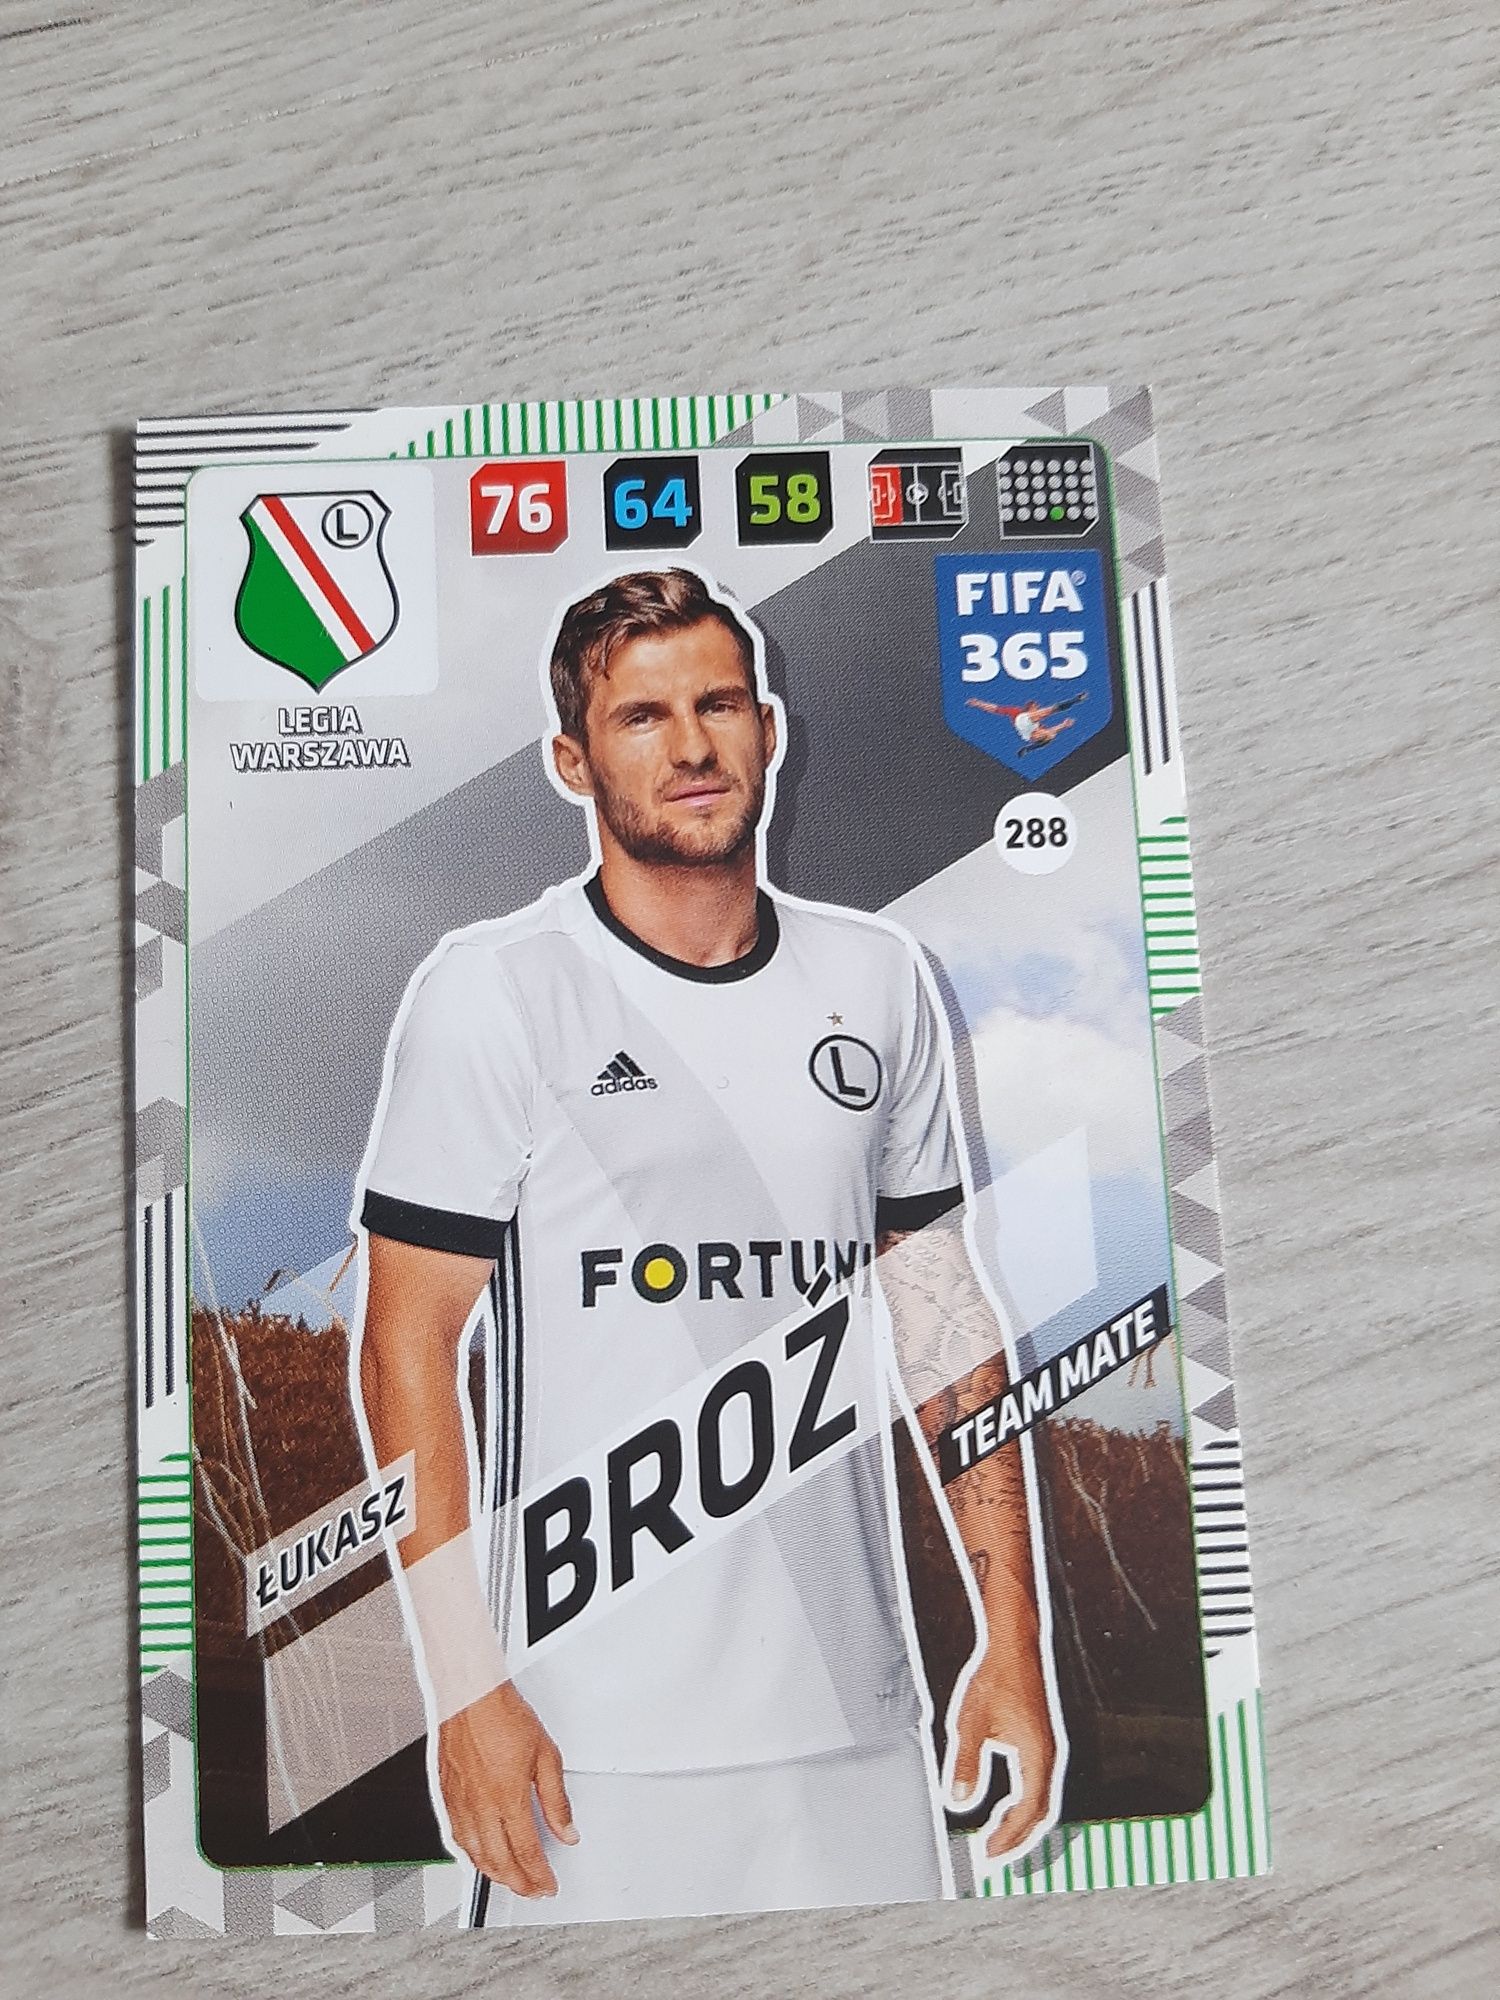 Karta Łukasz Broz nr 288 FIFA365